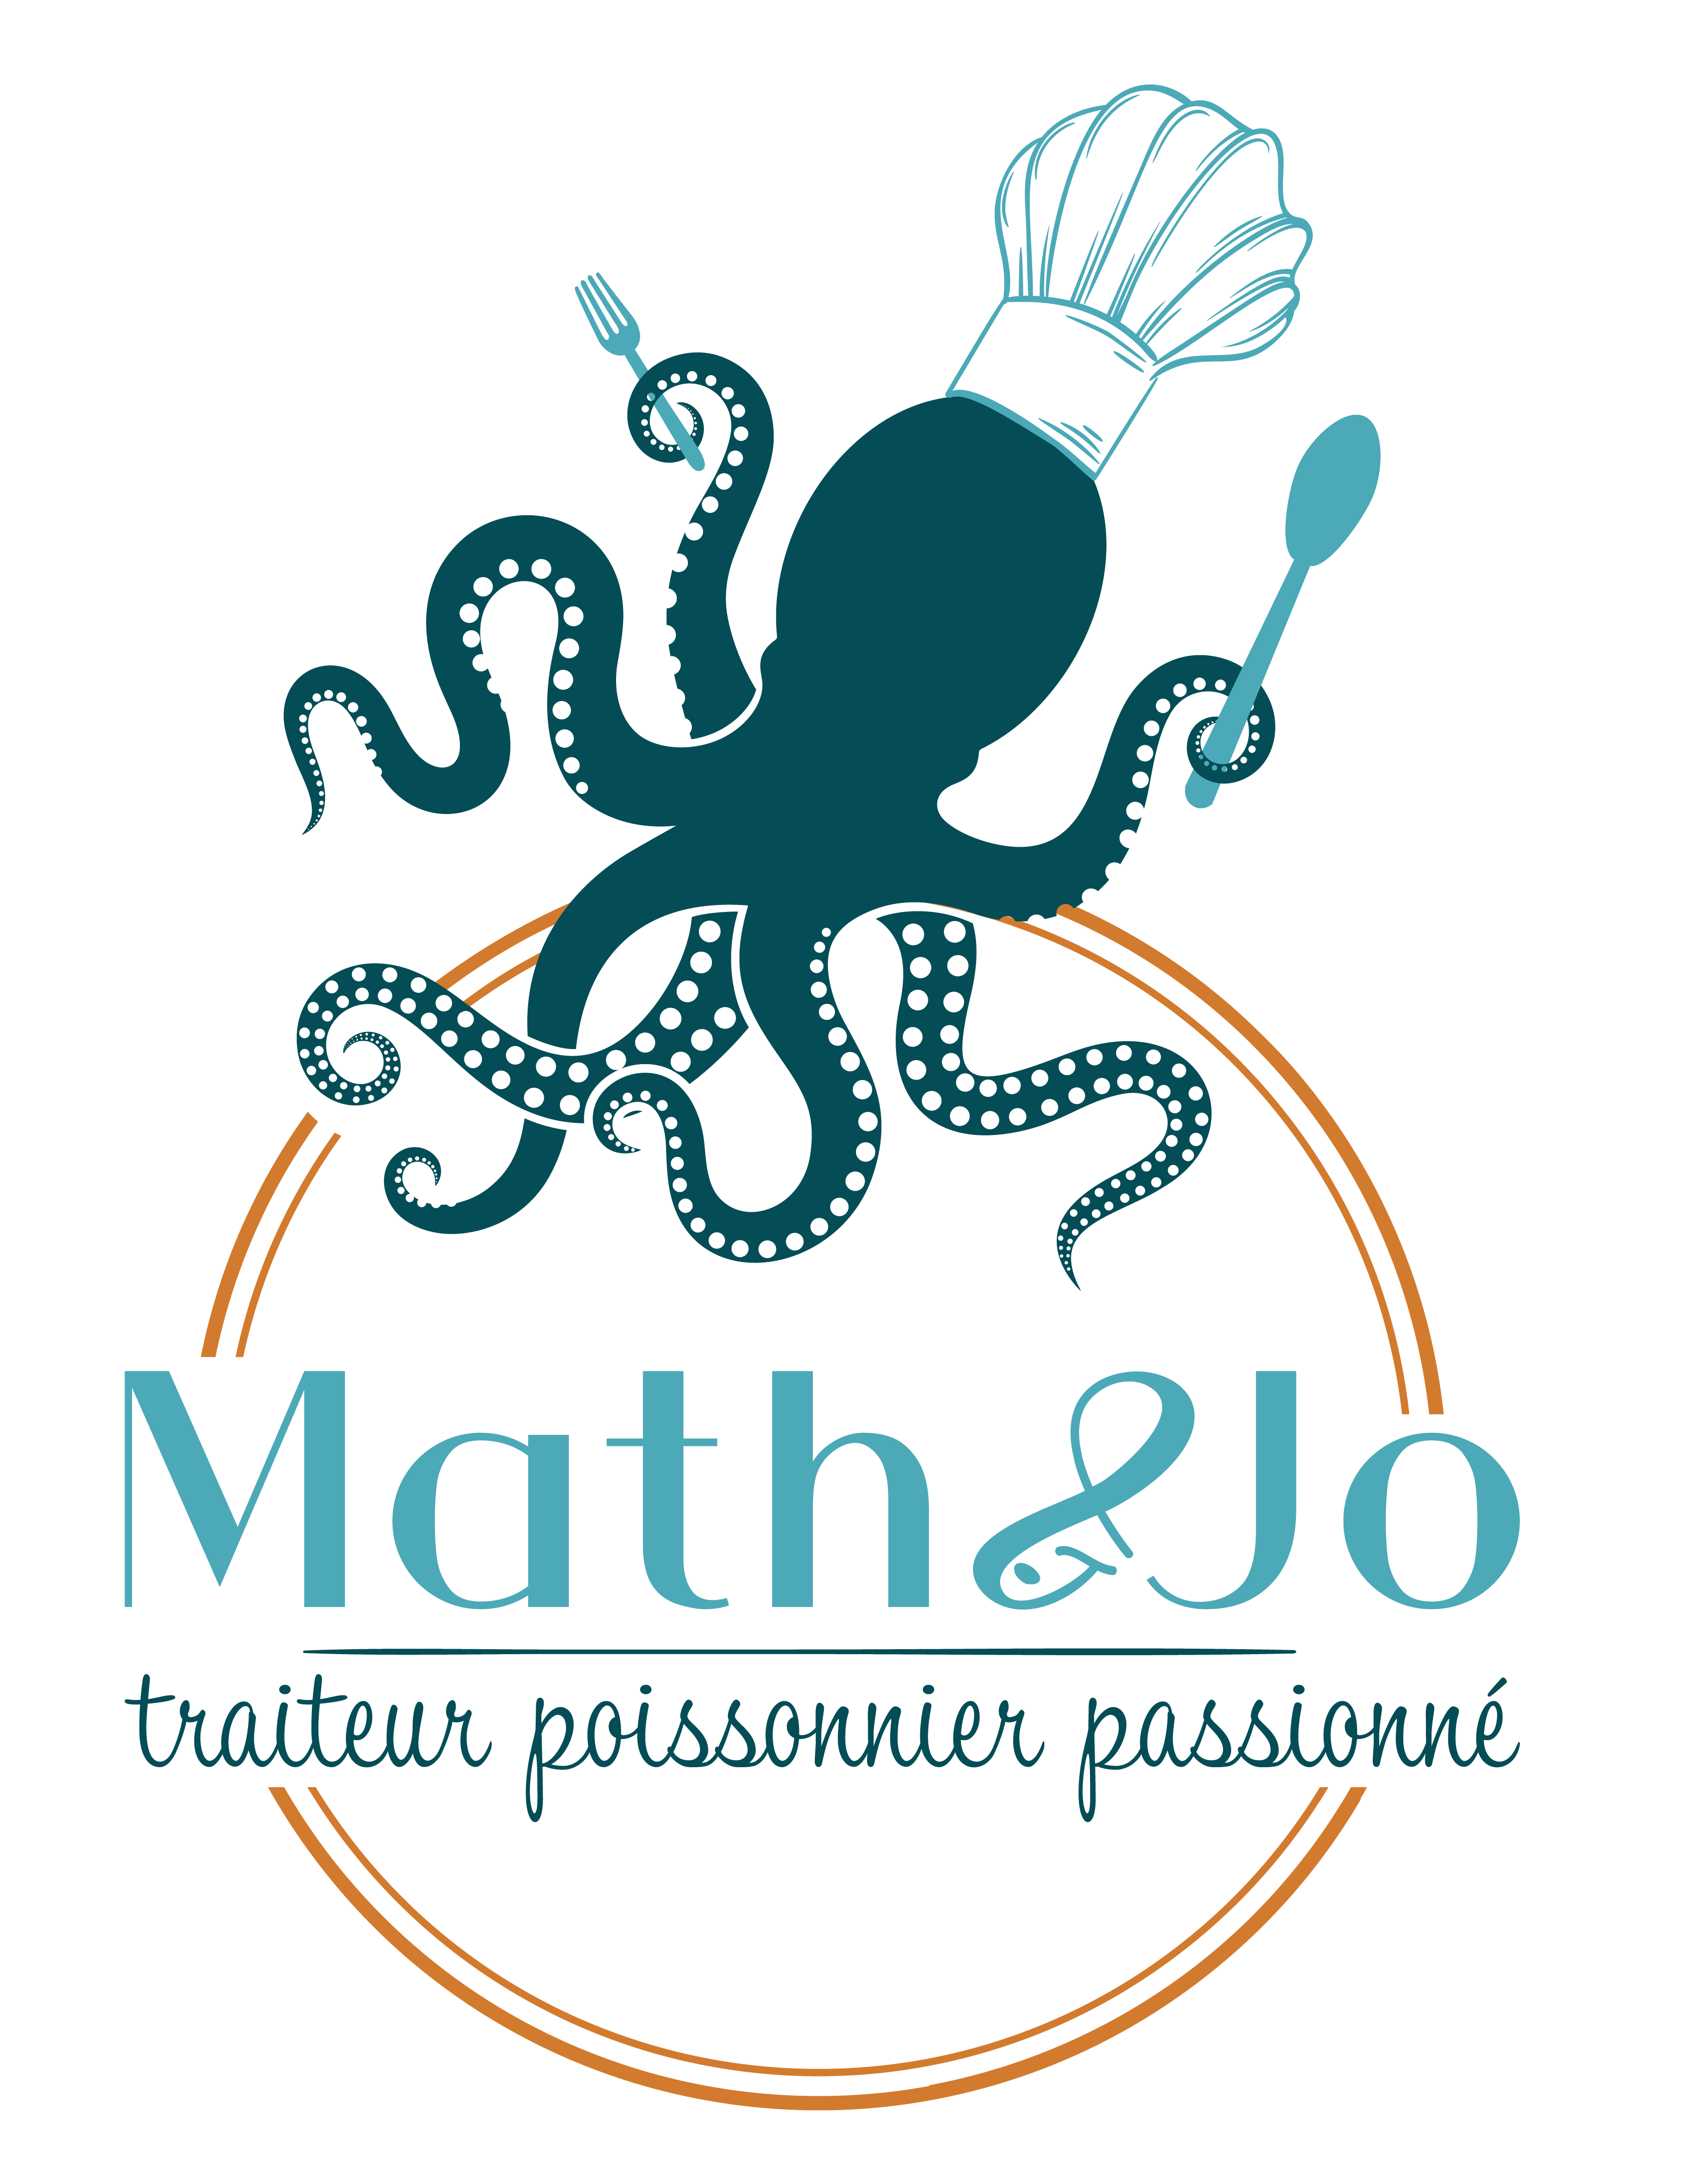 Traiteur de la mer - Logo mathetjo